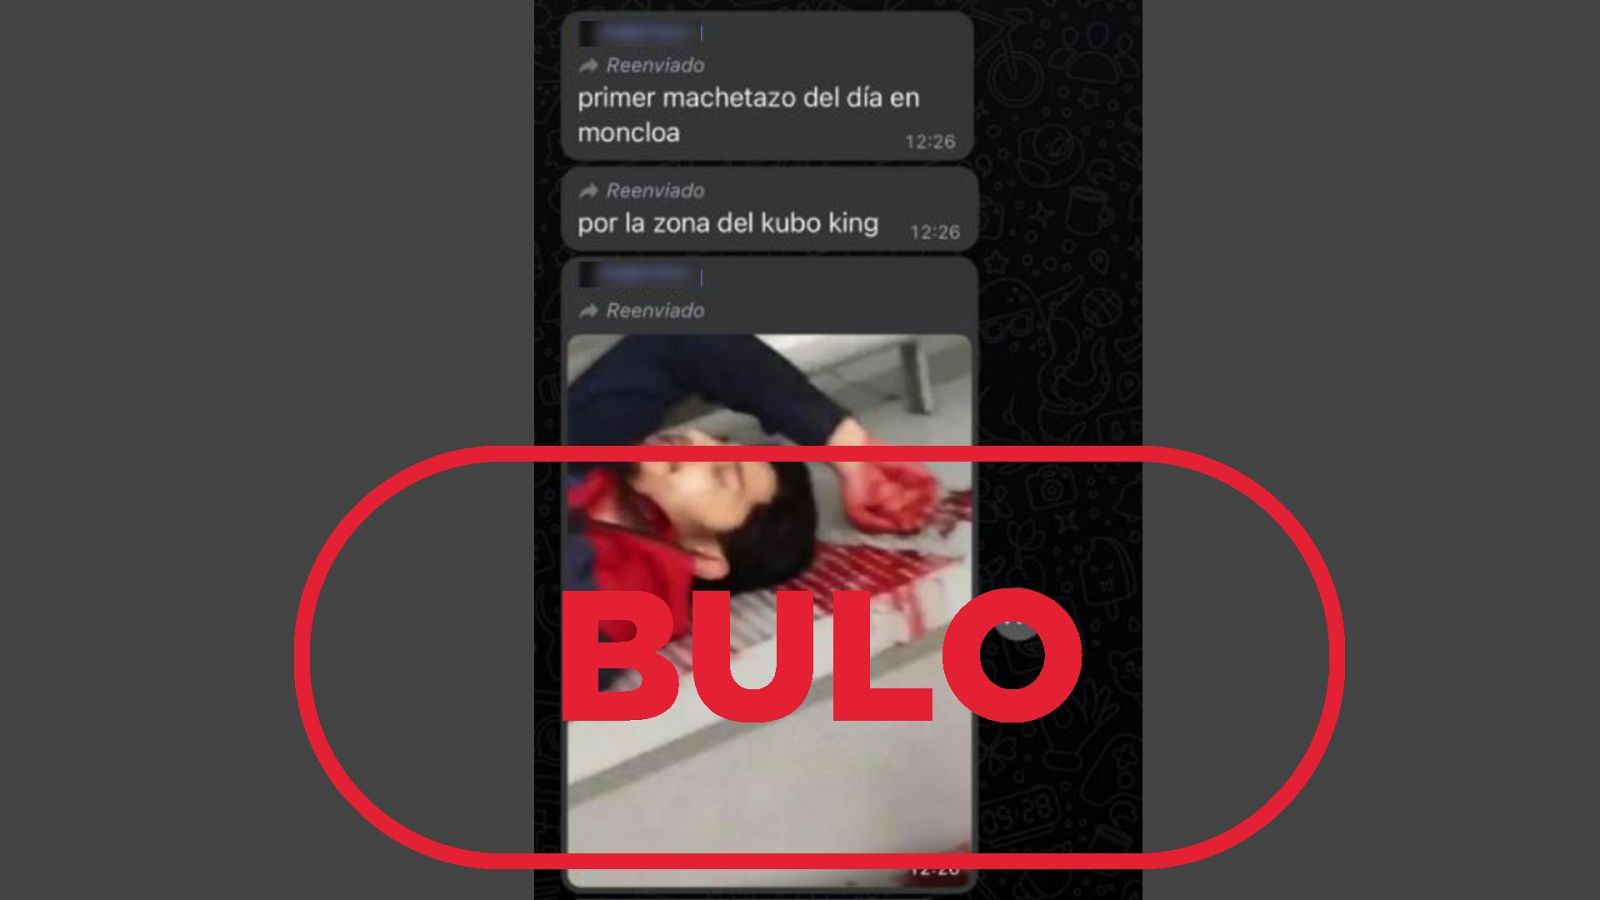 Mensaje que alerta sobre un "machetazo" en Madrid con el sello: bulo